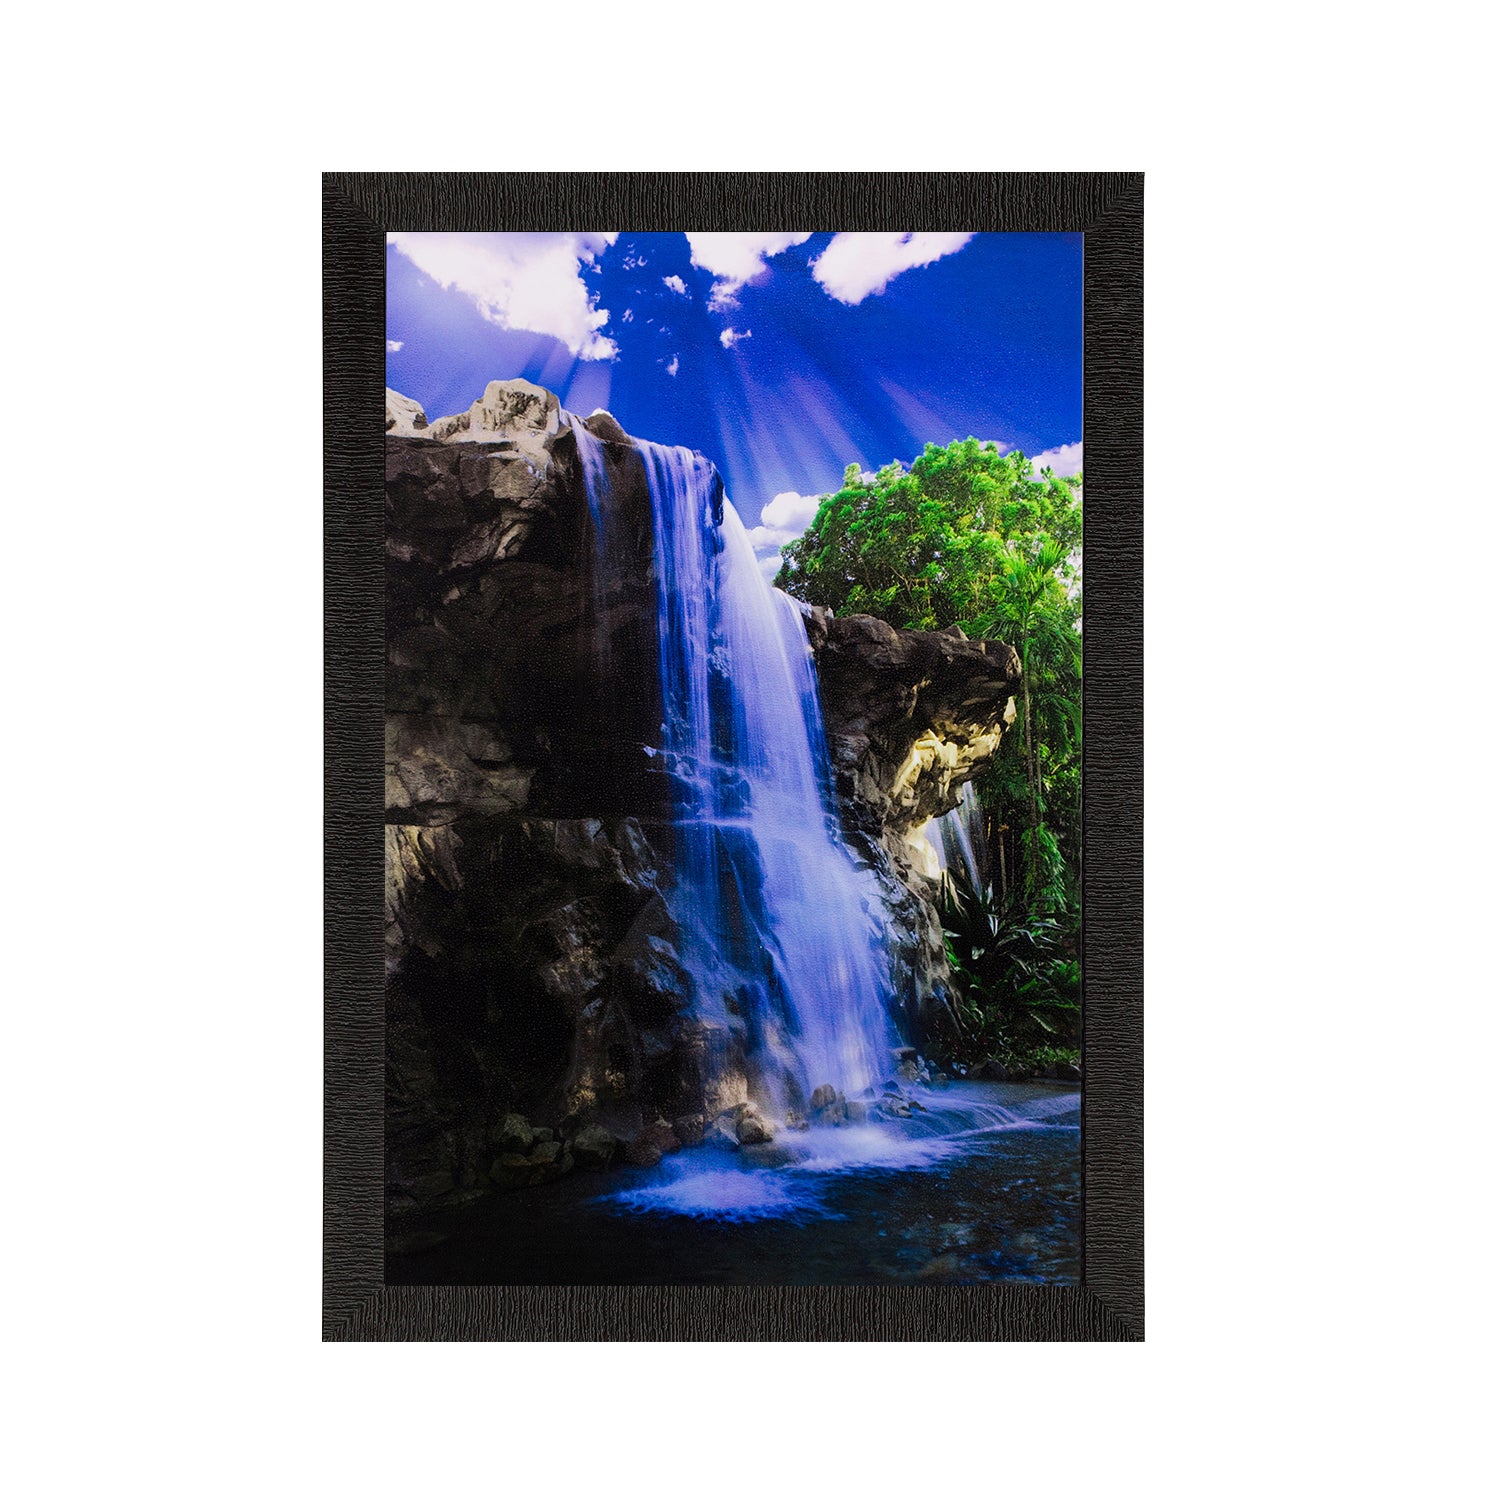 Waterfall View Matt Textured UV Art Painting